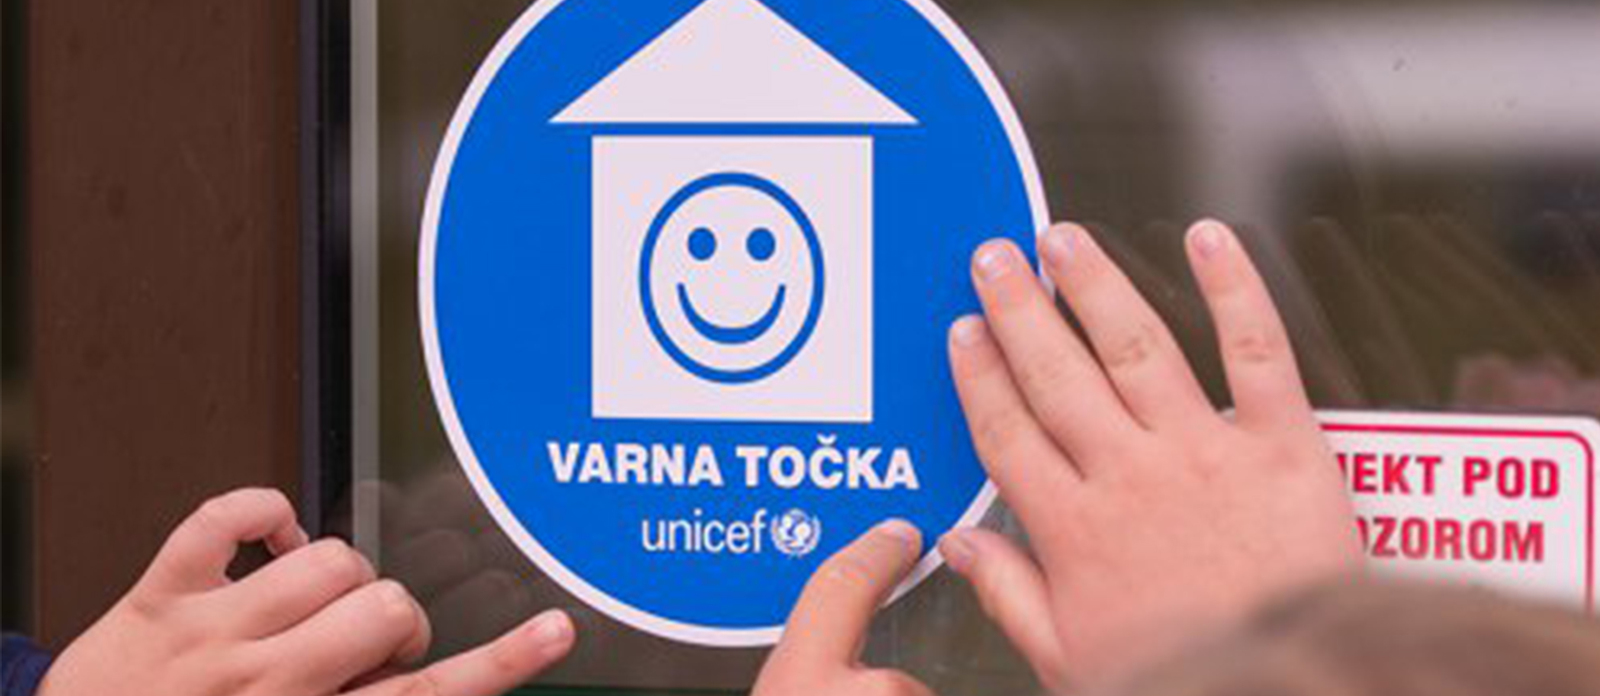 UNICEF-ove Varne točke